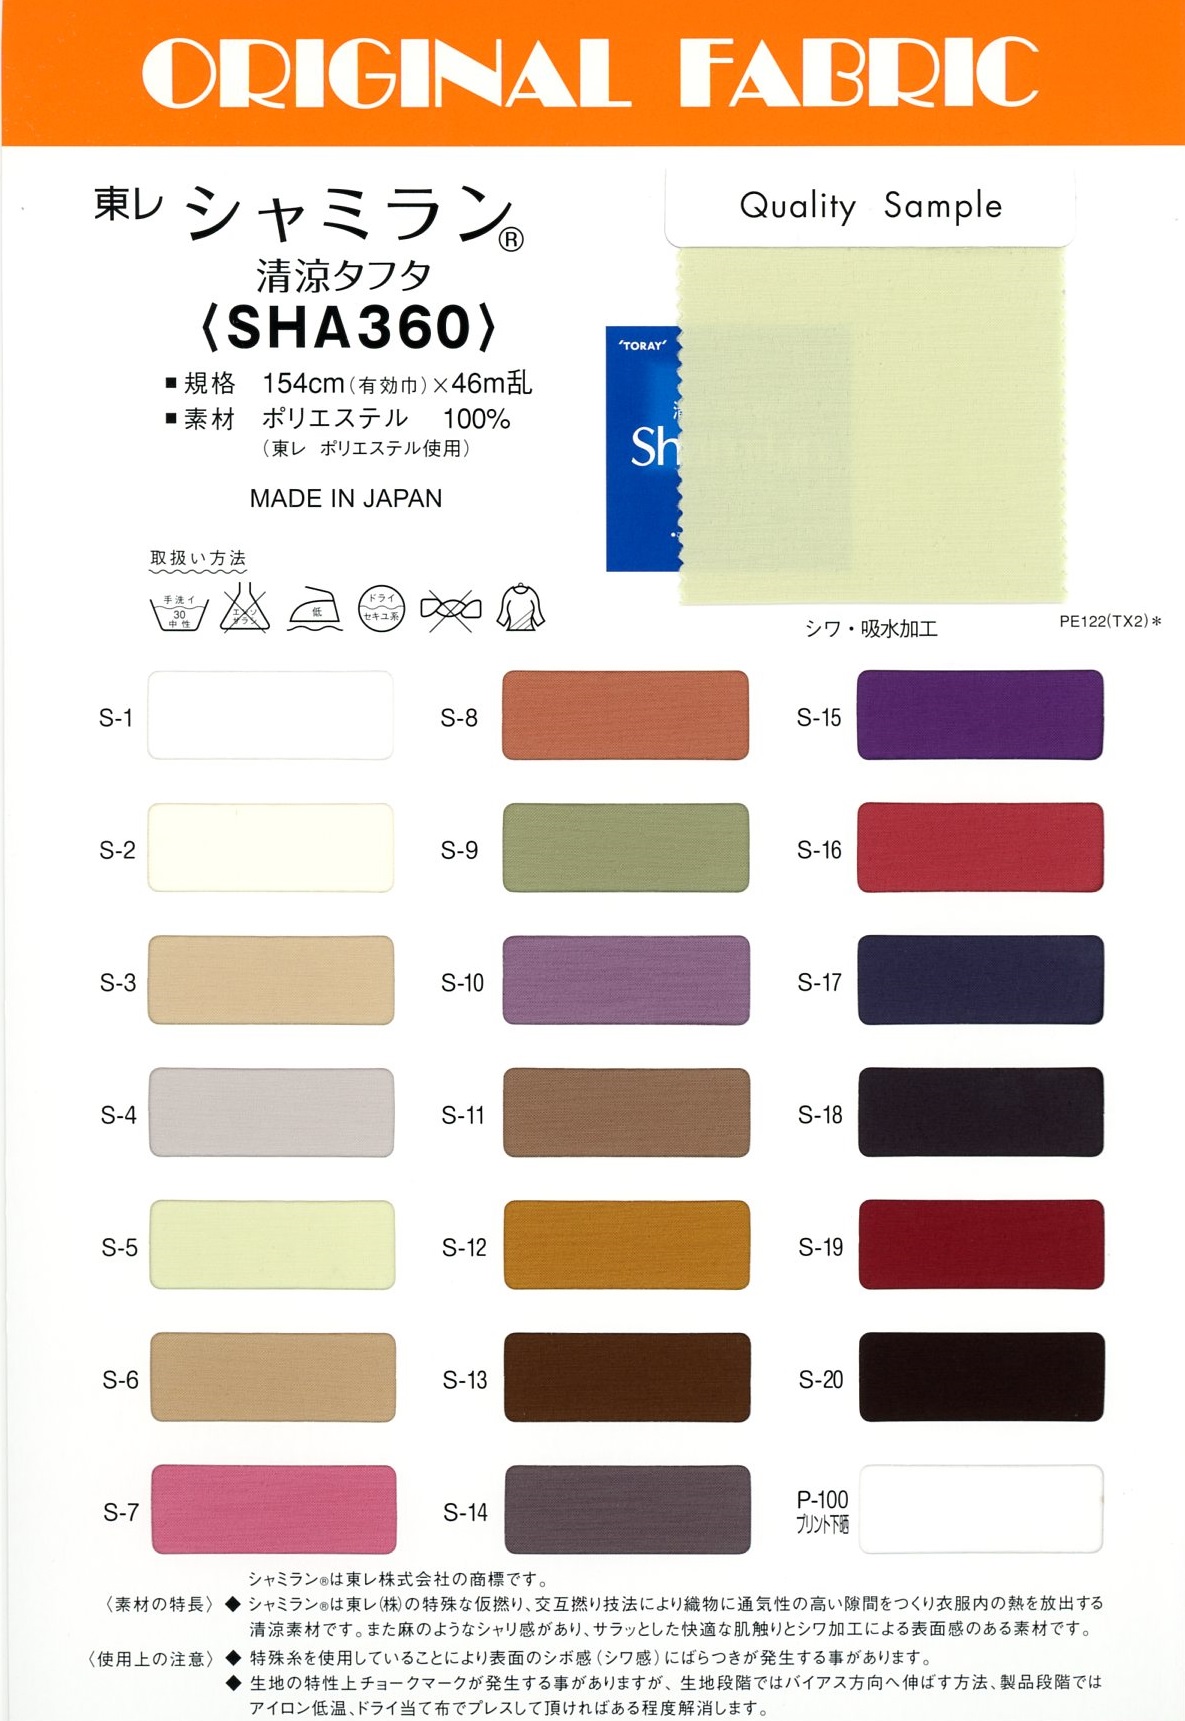 SHA360 Shamiran Erfrischender Taft[Textilgewebe] Masuda